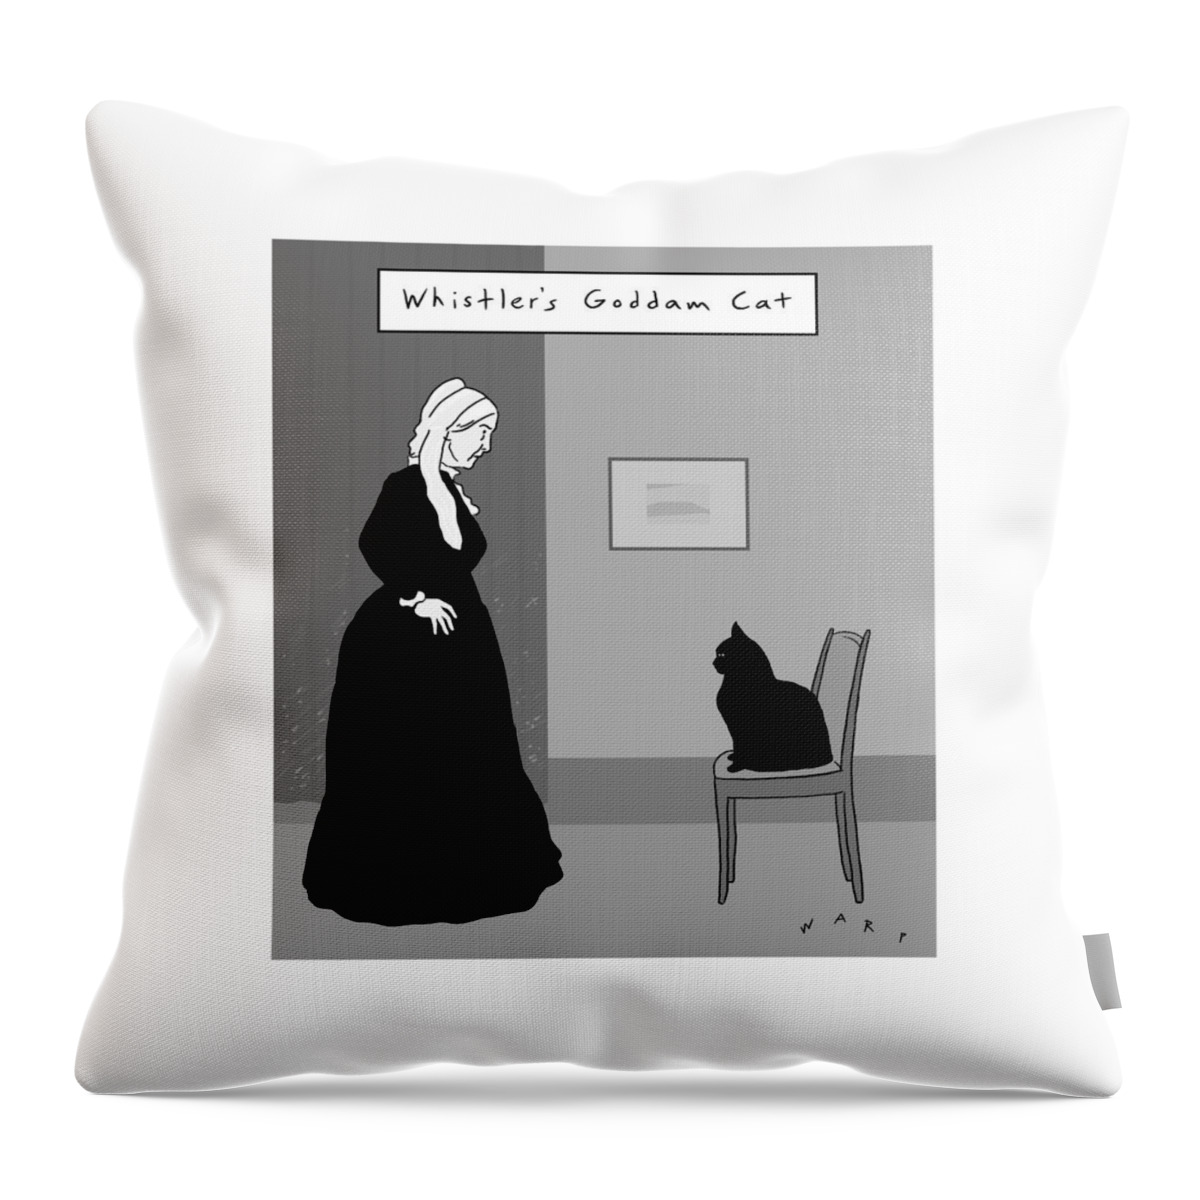 Whistler's Goddam Cat Throw Pillow